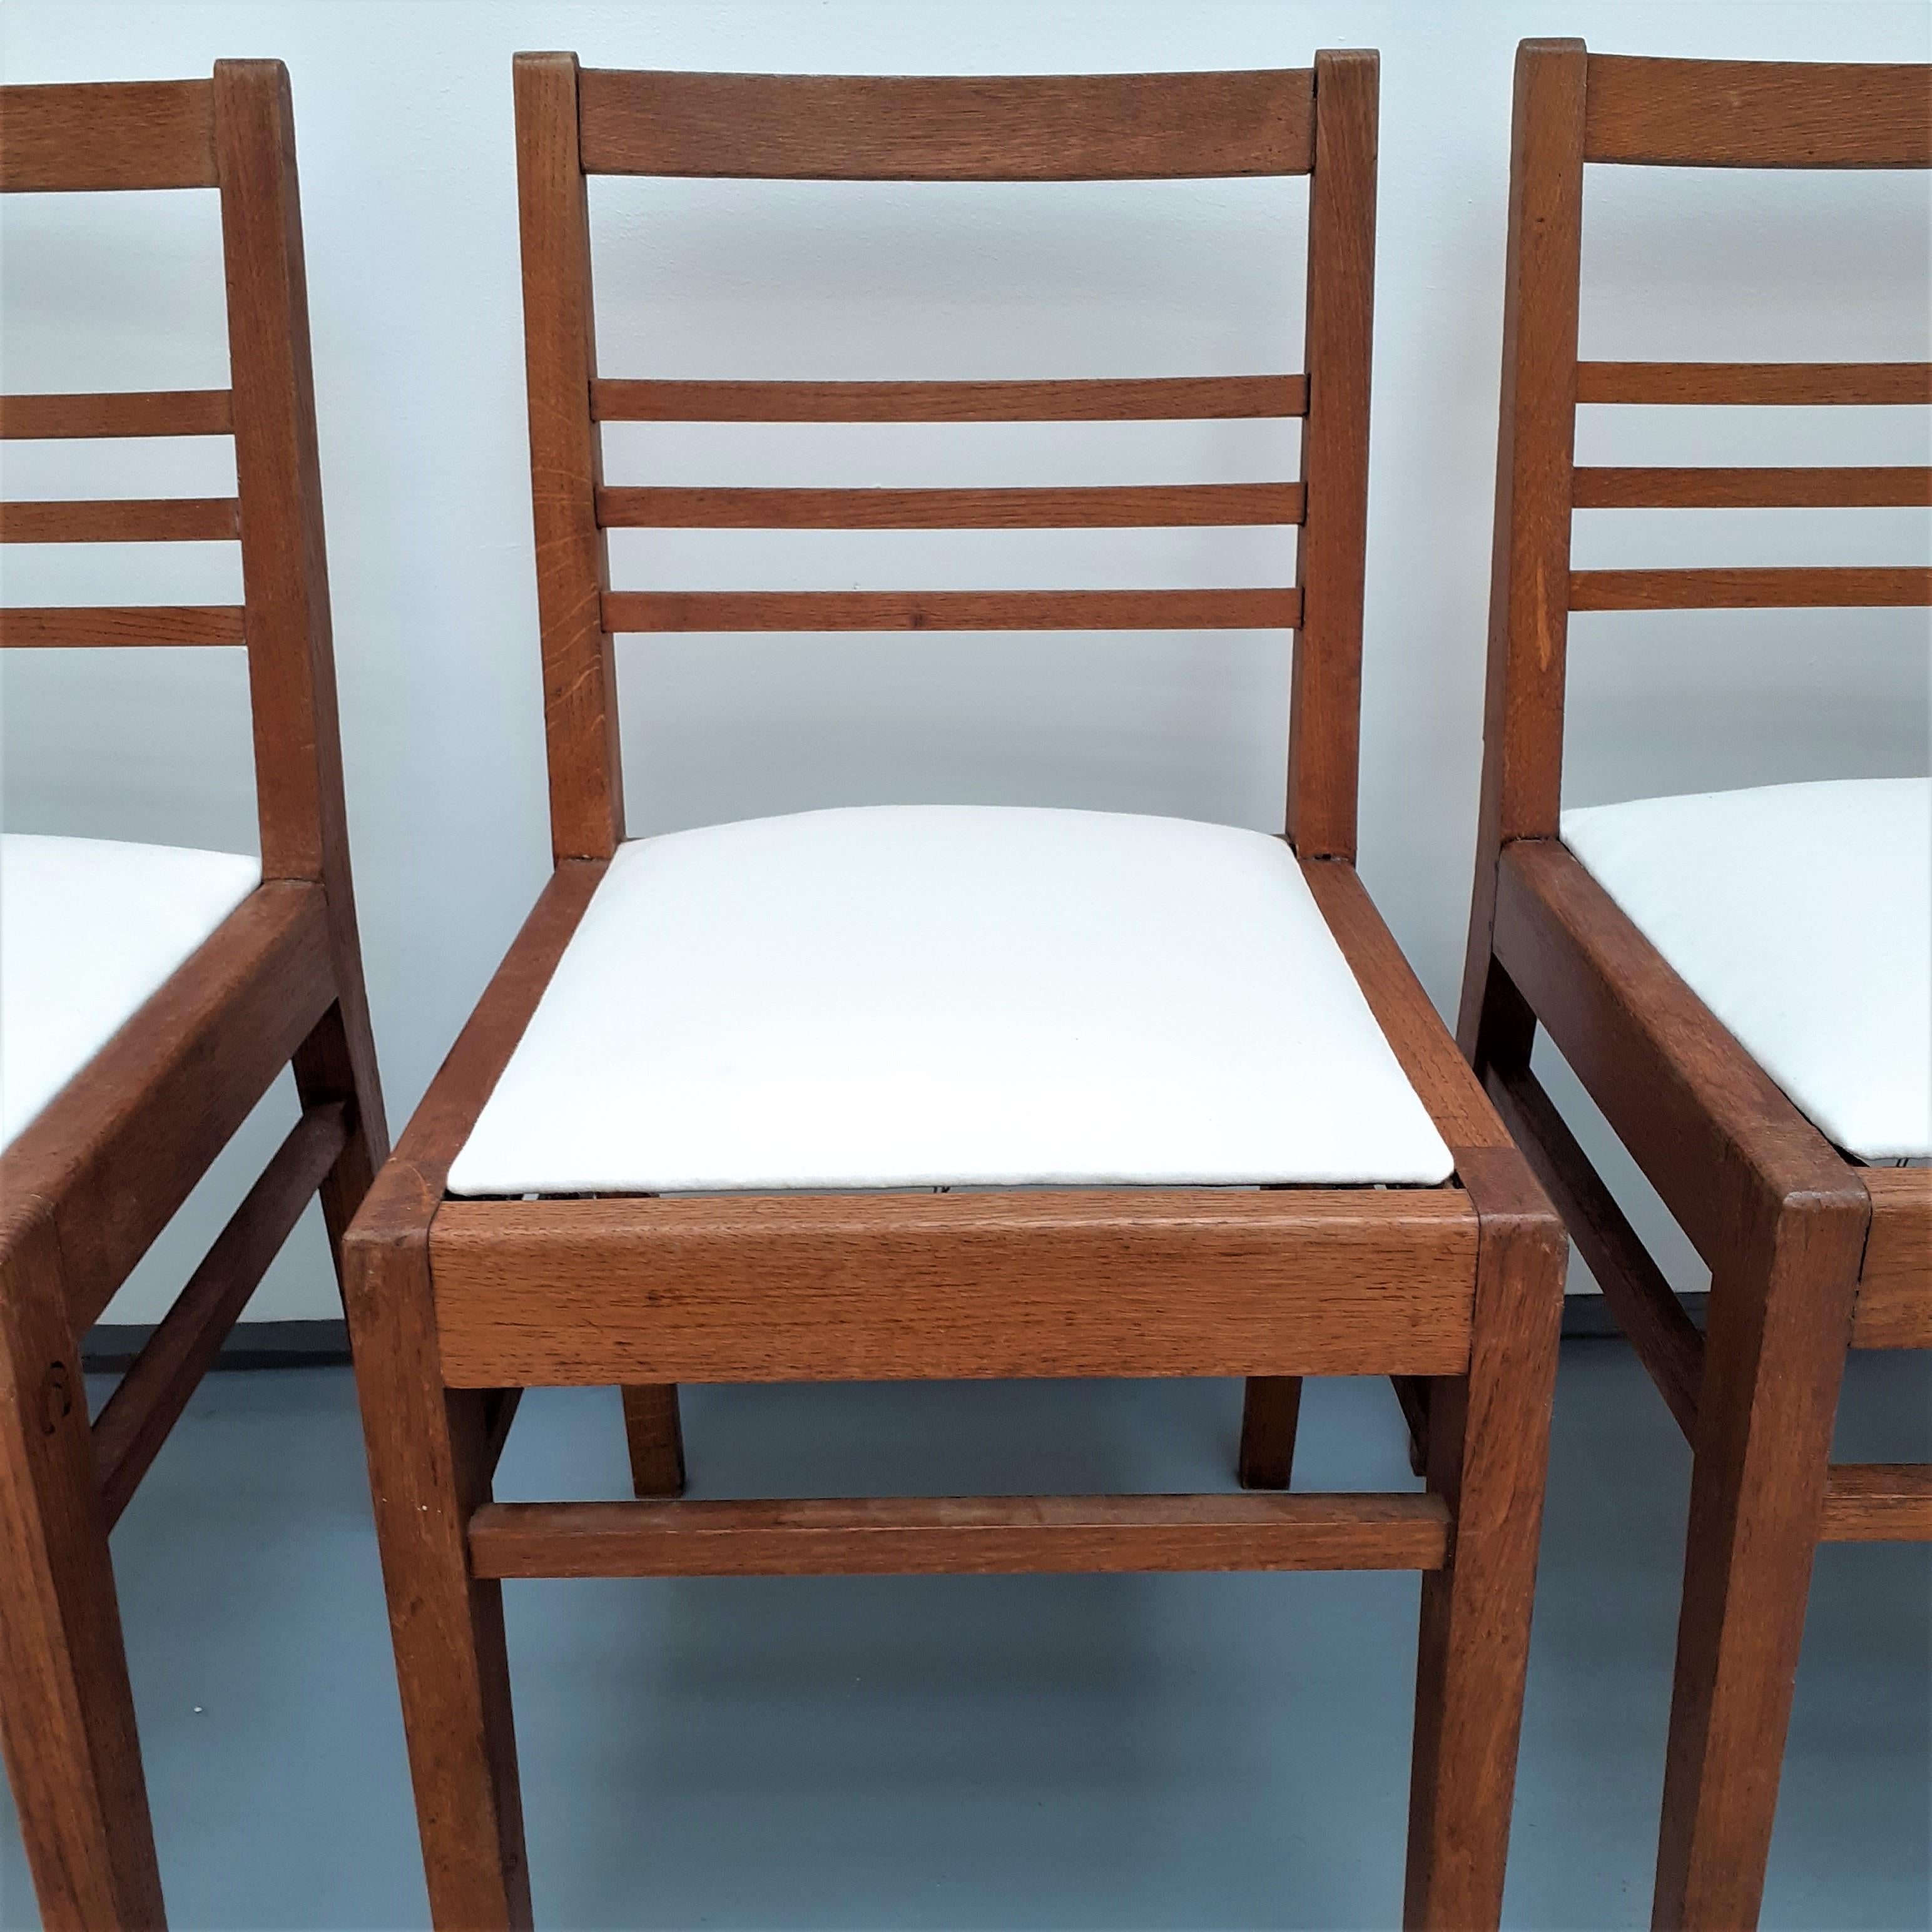 Ensemble de 4 chaises en Oak avec assise en tissu blanc par René Gabriel, années 1950

René Gabriel (1899 - 1950) est un précurseur du design industriel français. Il fut l'un des premiers à créer, dès les années 1930, des meubles économiques de